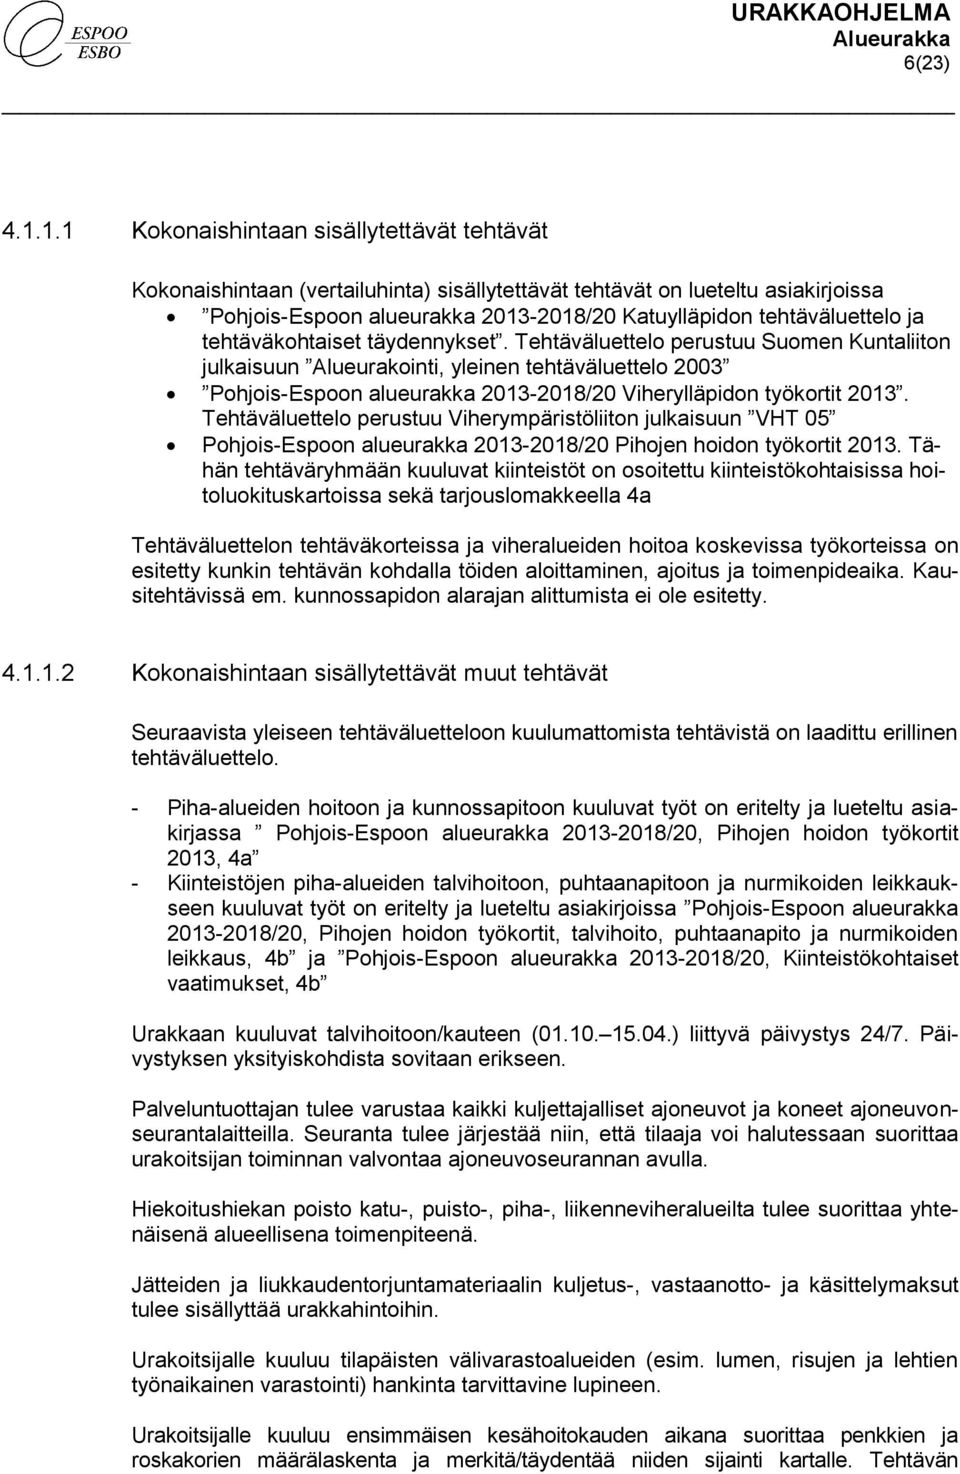 tehtäväkohtaiset täydennykset. Tehtäväluettelo perustuu Suomen Kuntaliiton julkaisuun Alueurakointi, yleinen tehtäväluettelo 2003 Pohjois-Espoon alueurakka 2013-2018/20 Viherylläpidon työkortit 2013.